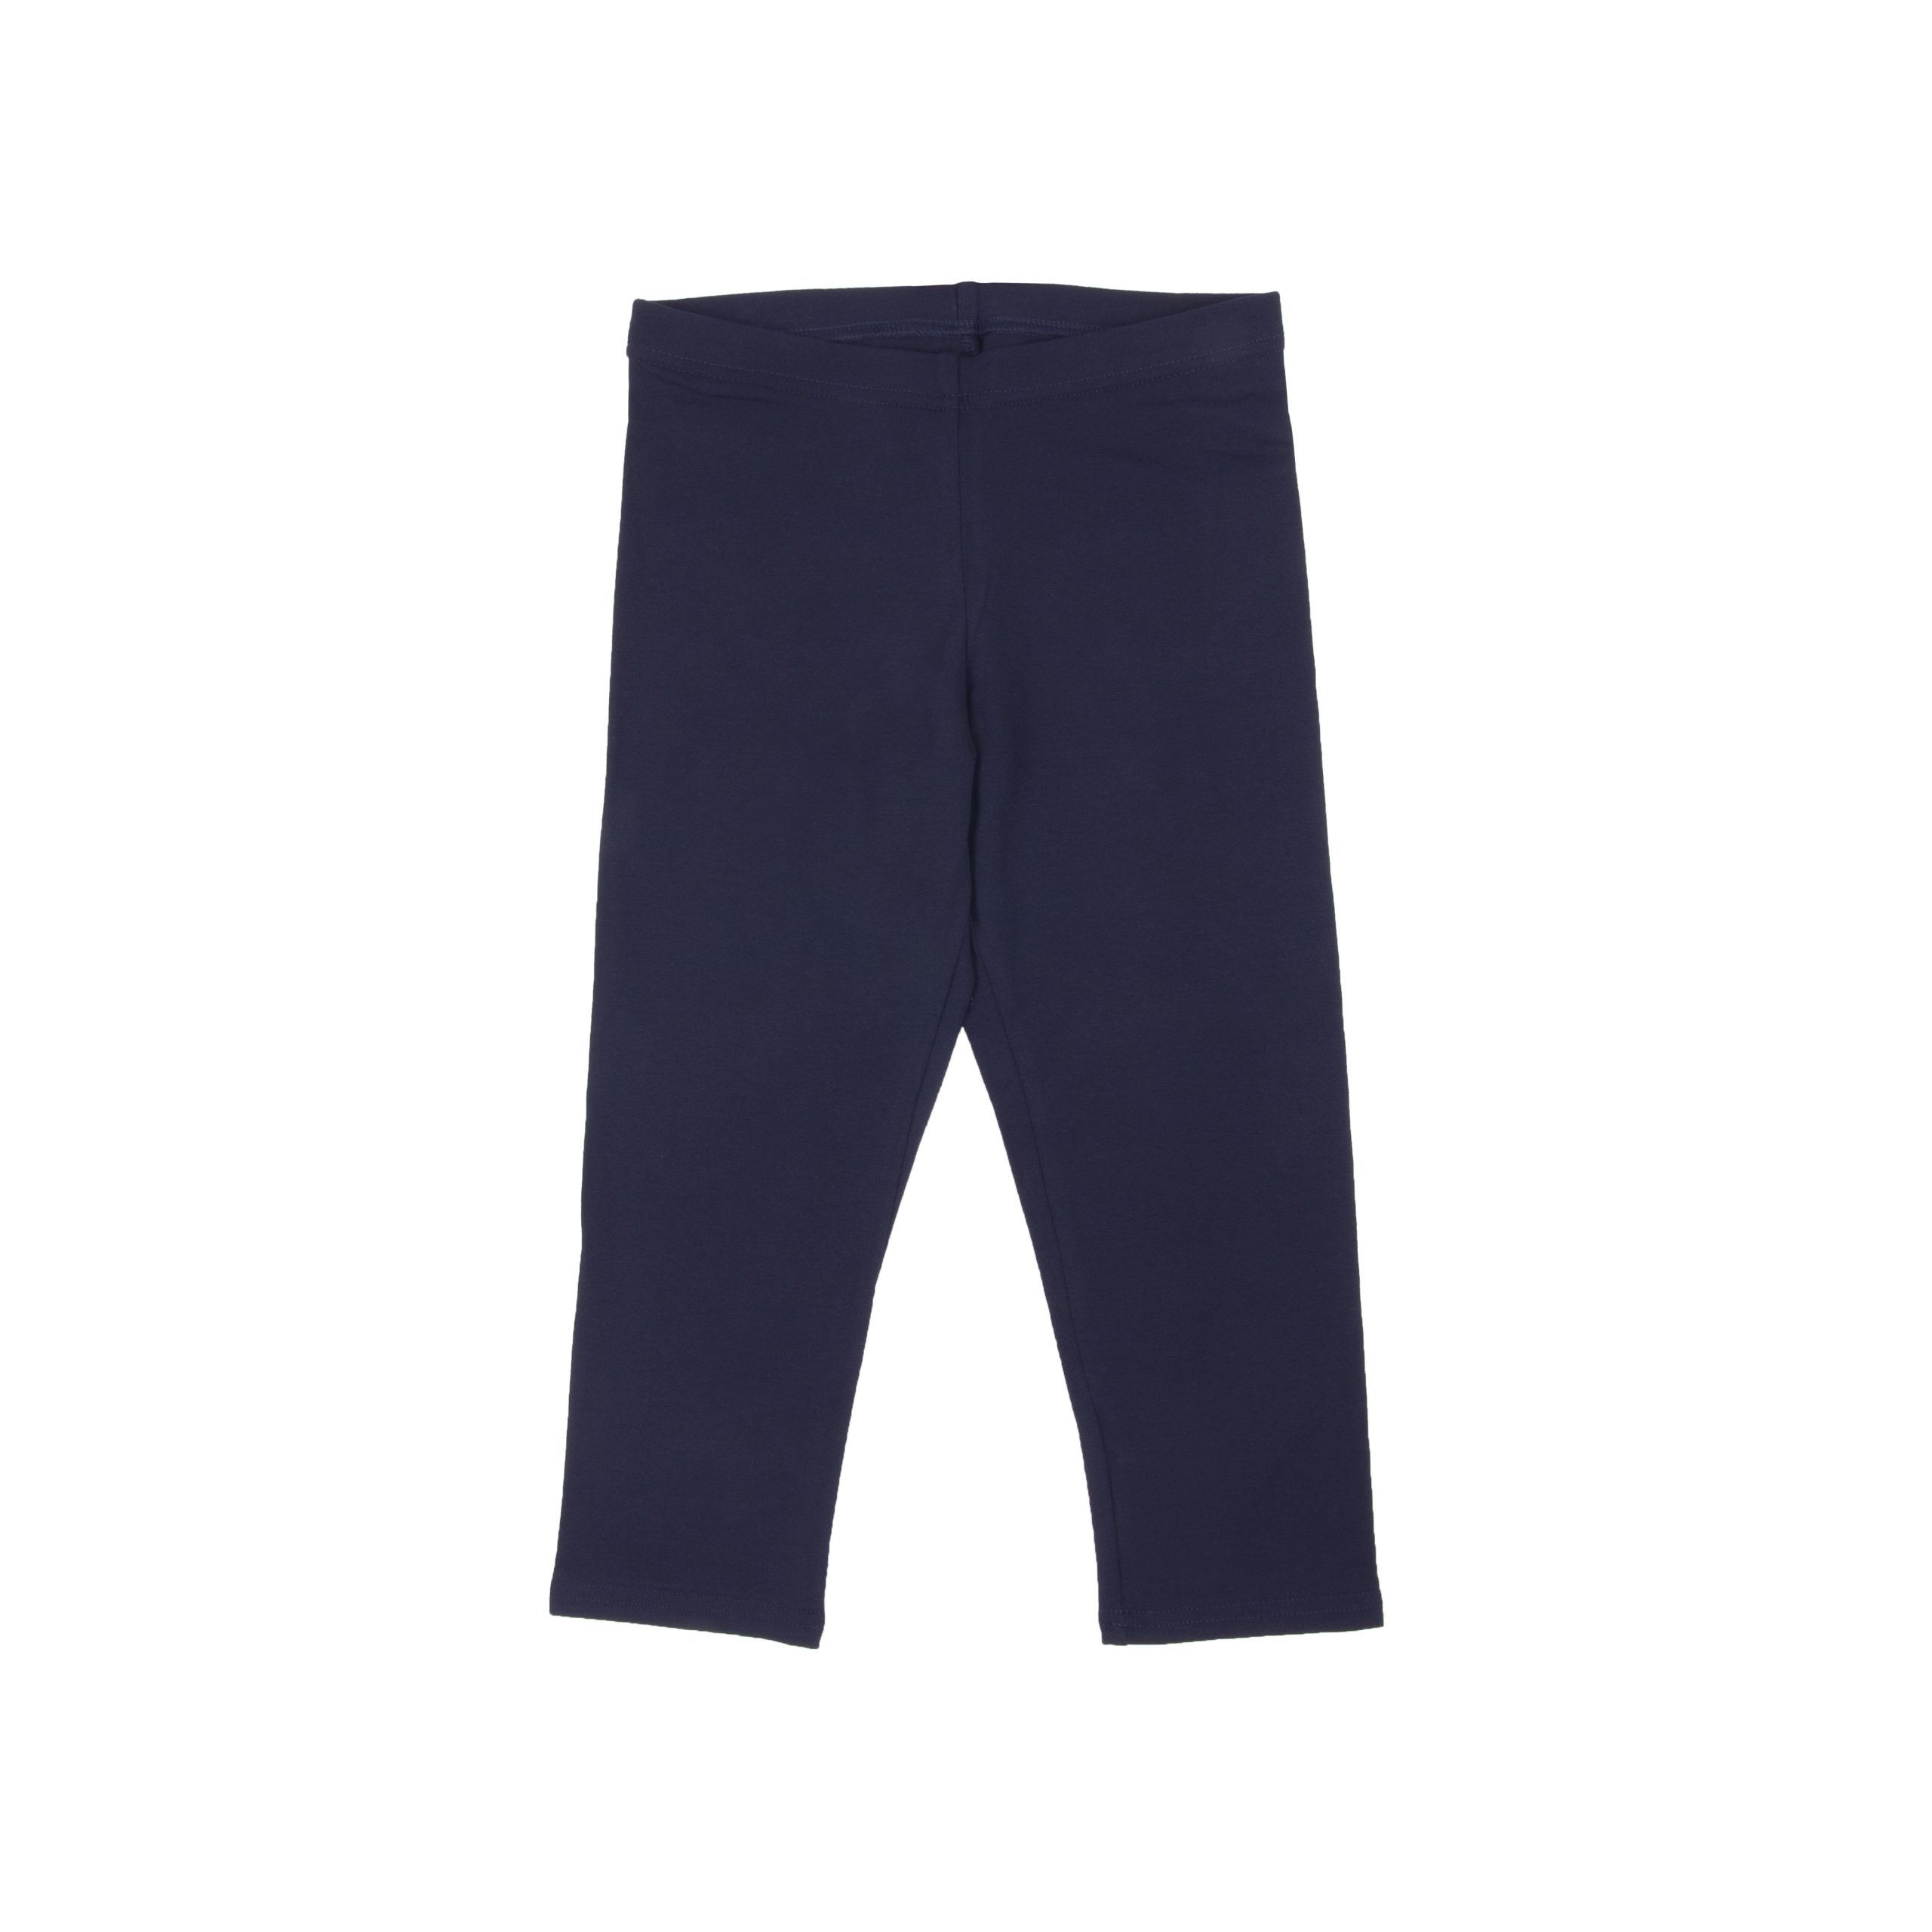 3/4 lenght dark blue leggings - Lenne